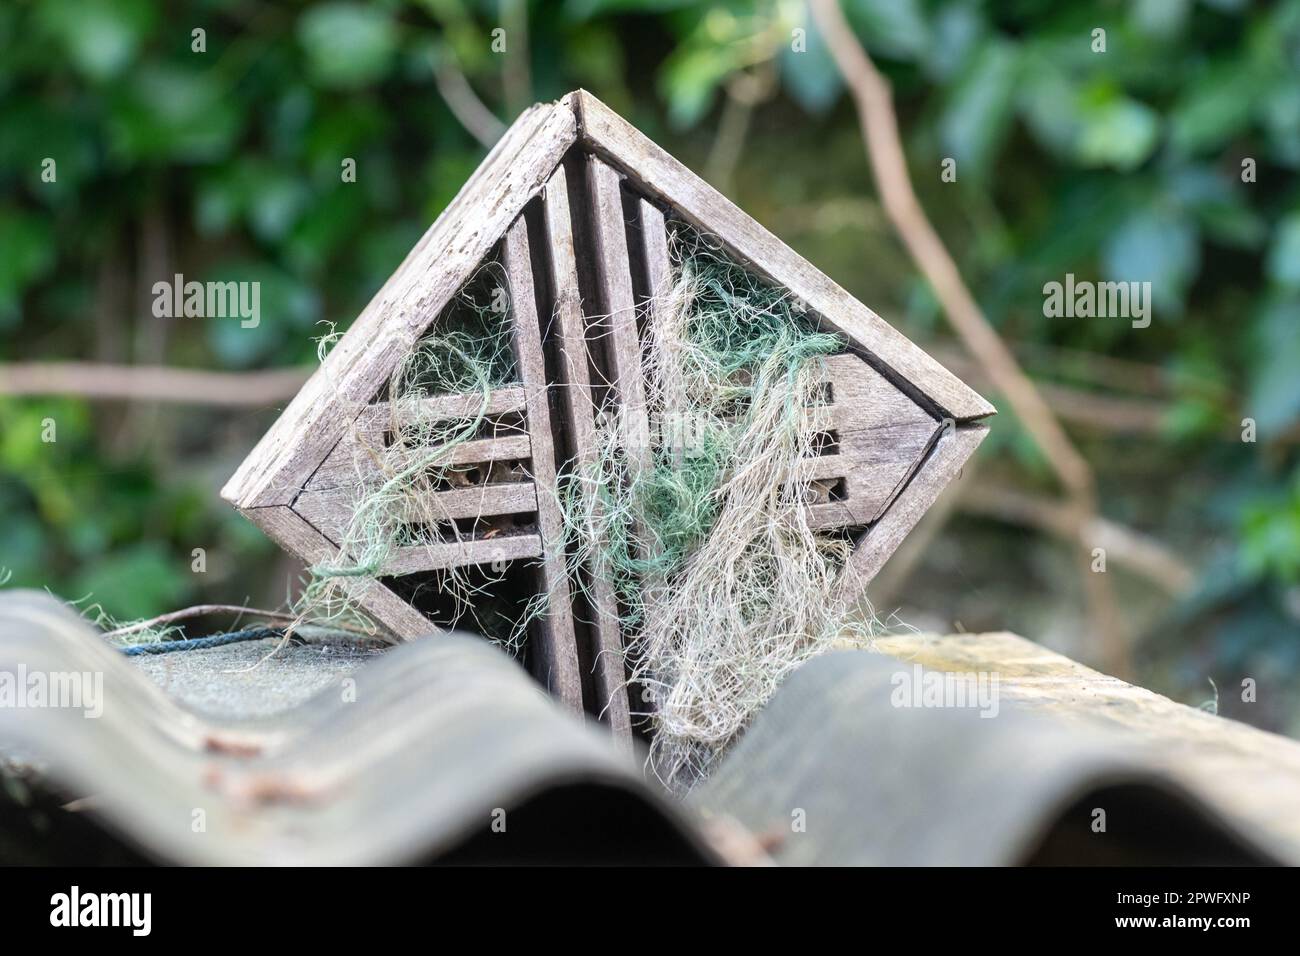 Materiale di nidificazione messo fuori in una cornice di legno in primavera per gli uccelli da usare nei loro nidi, Regno Unito Foto Stock